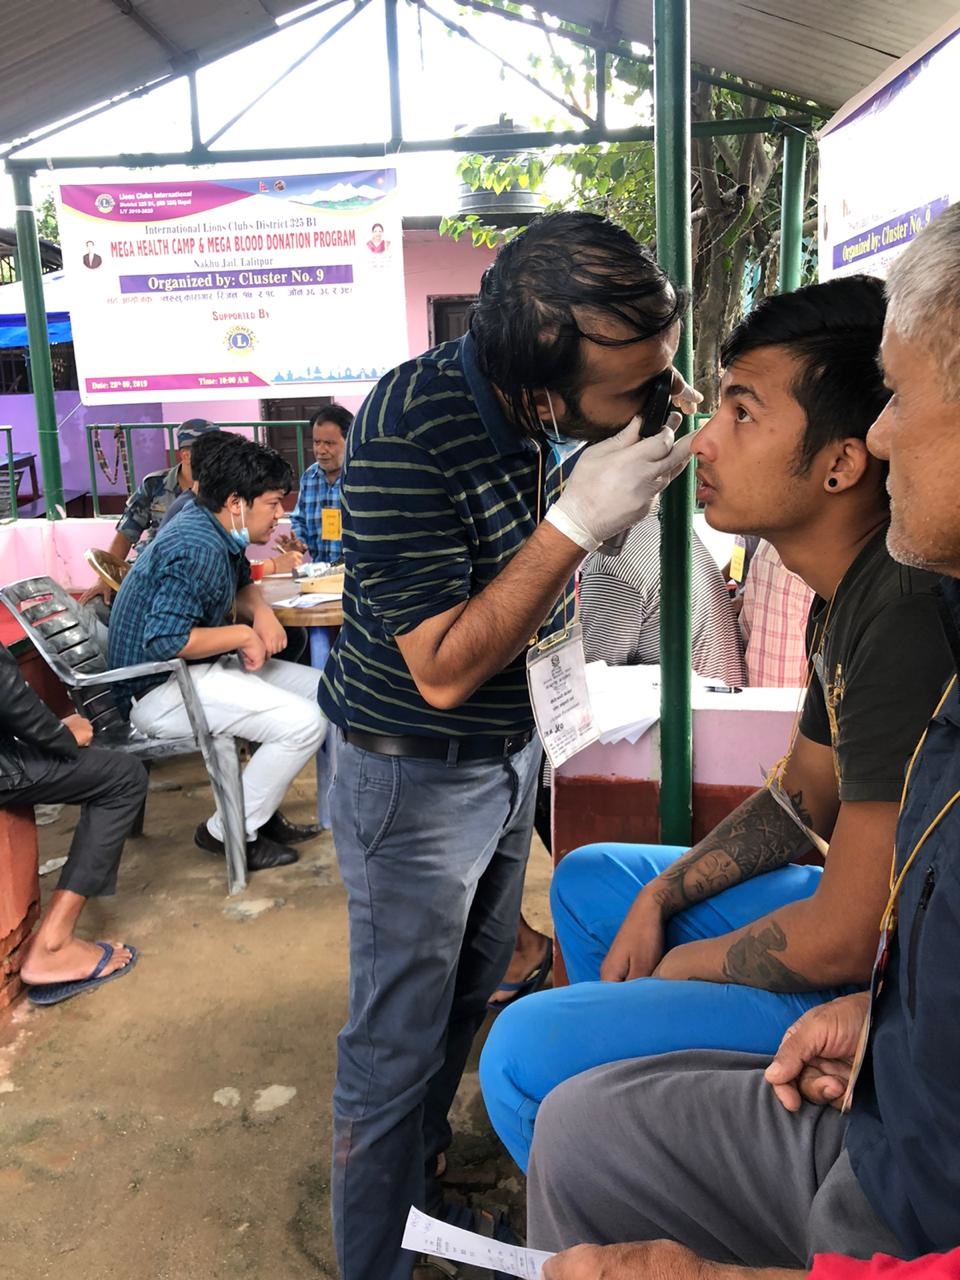 Mitglieder des Lions Club Kathmandu Doctors Nepal führen in Zusammenarbeit mit dem Bankers Specialty Club ein groß angelegtes Gesundheitscamp und Blutspendeprogramm für die Häftlinge des Nakkhu-Gefängnises durch.